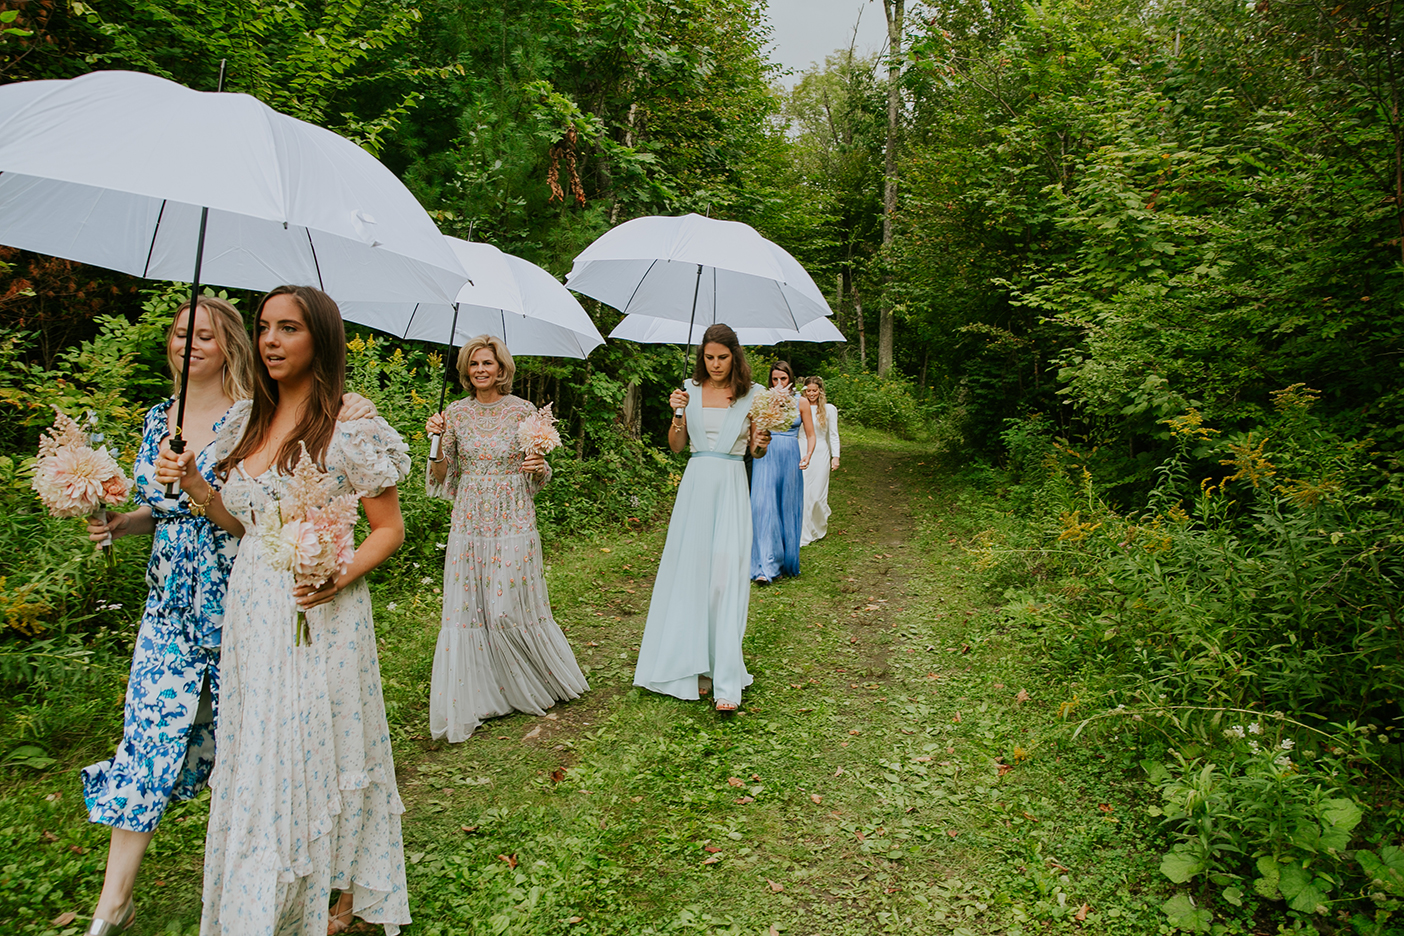 Wedding guests with umbrellas